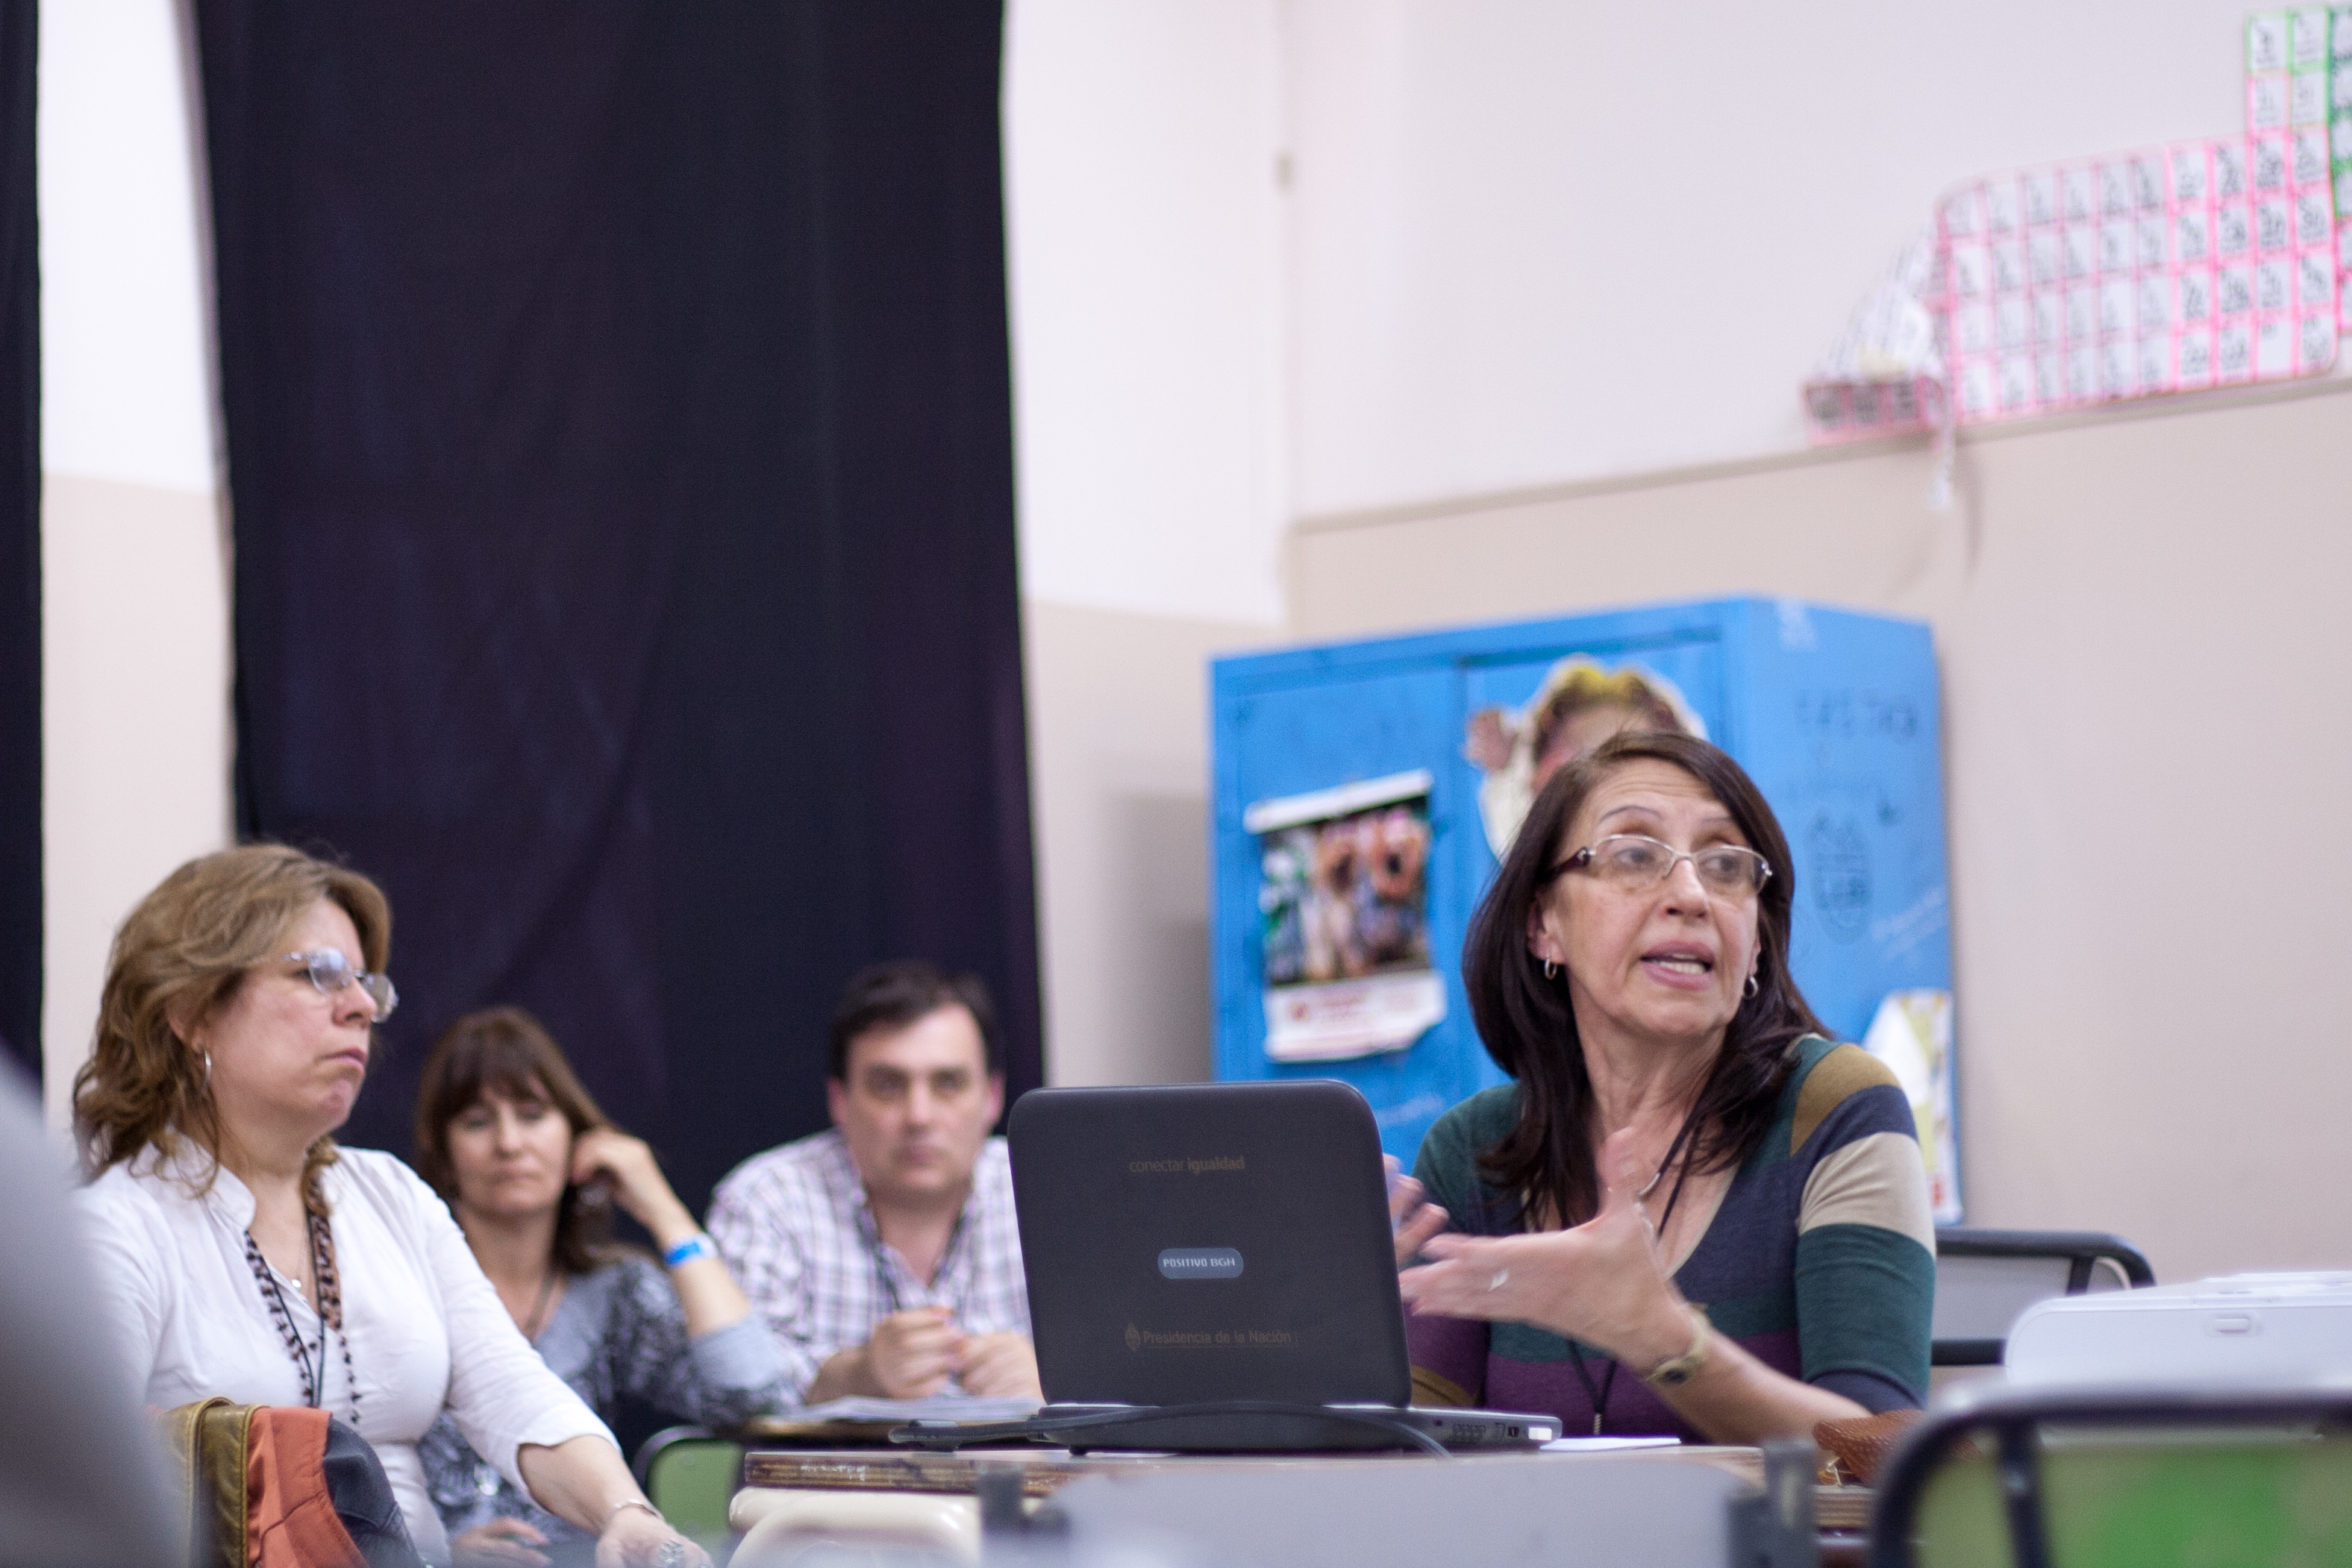 Experiencias de integración de TIC - IV Congreso Conectar Igualdad (Patagonia)